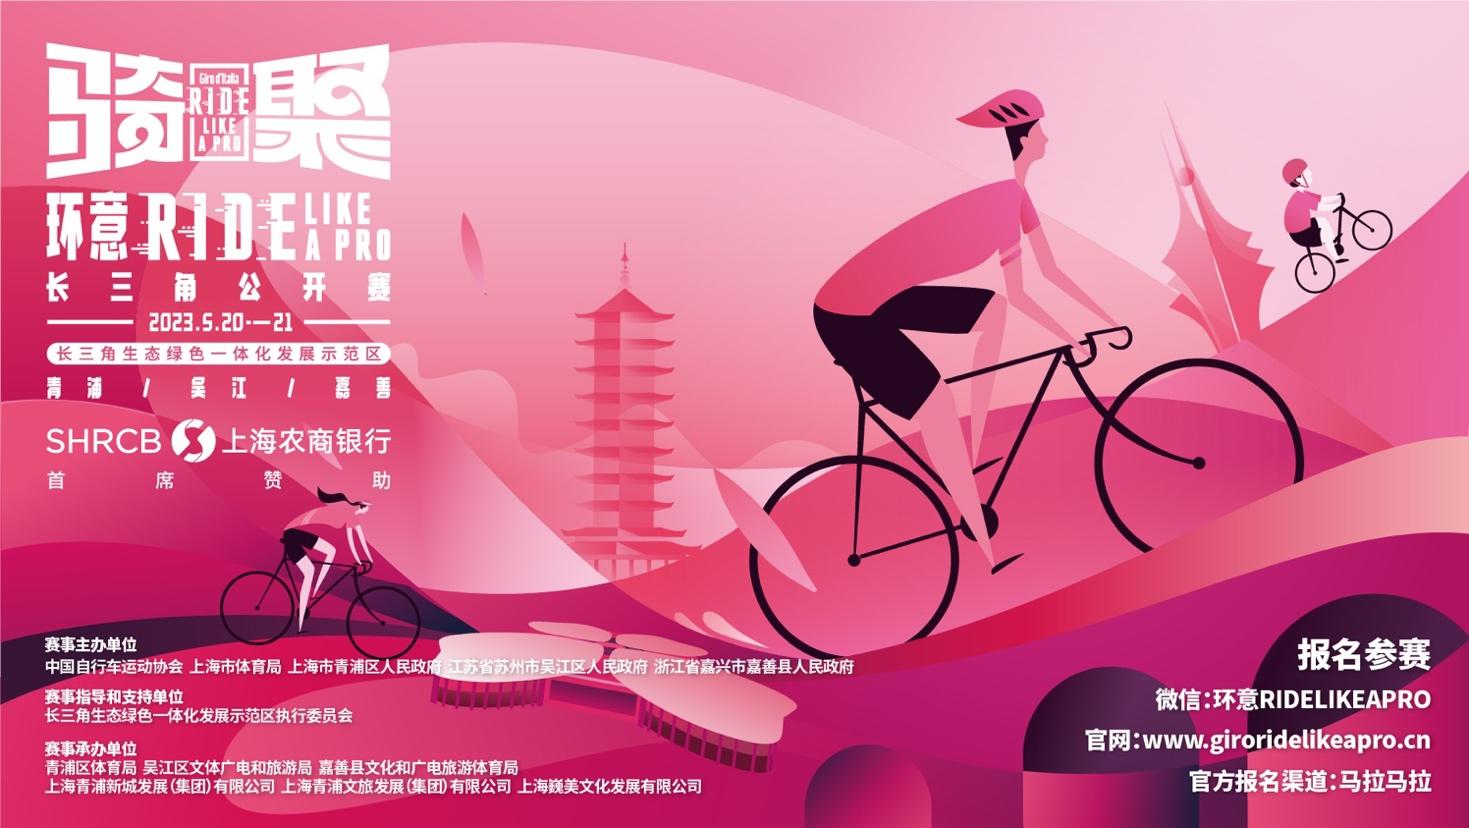 2023 Giro d’Italia Ride Like a Pro Yangtze River Delta Open is back in May